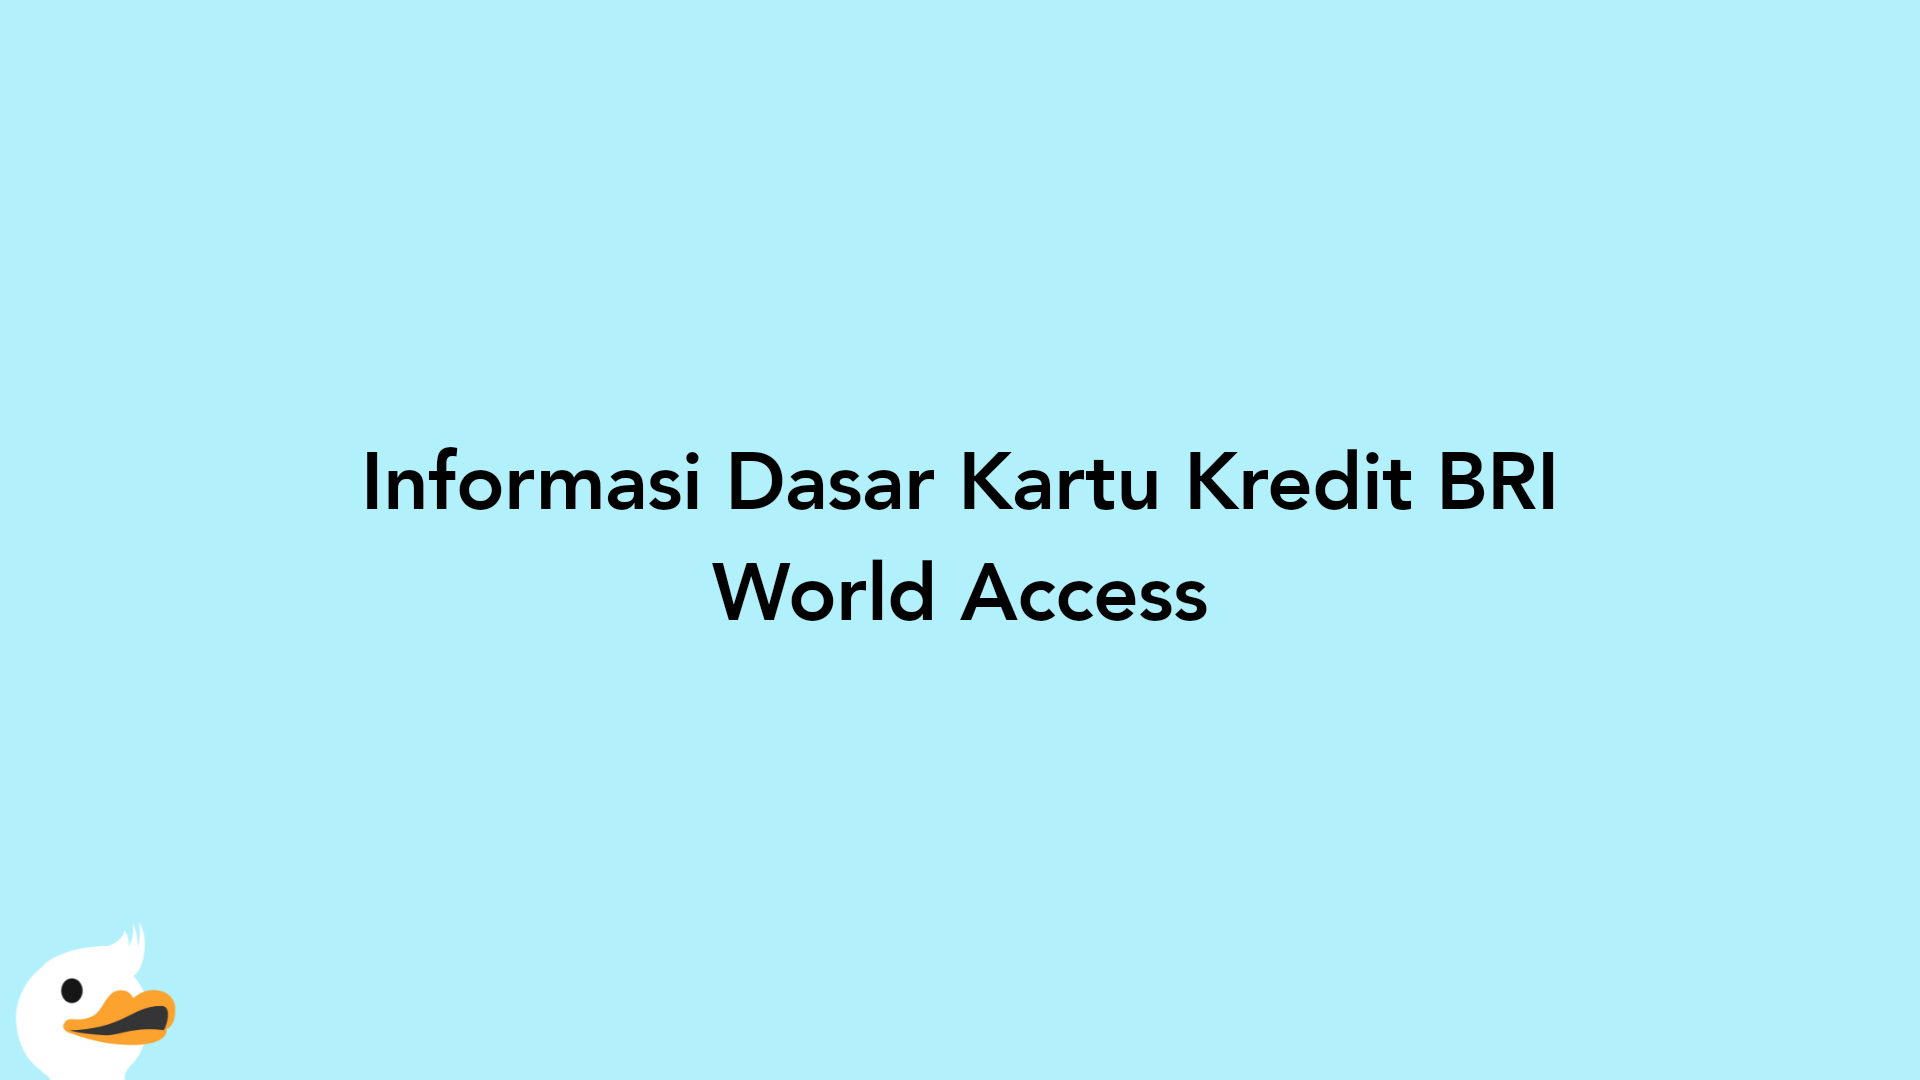 Informasi Dasar Kartu Kredit BRI World Access